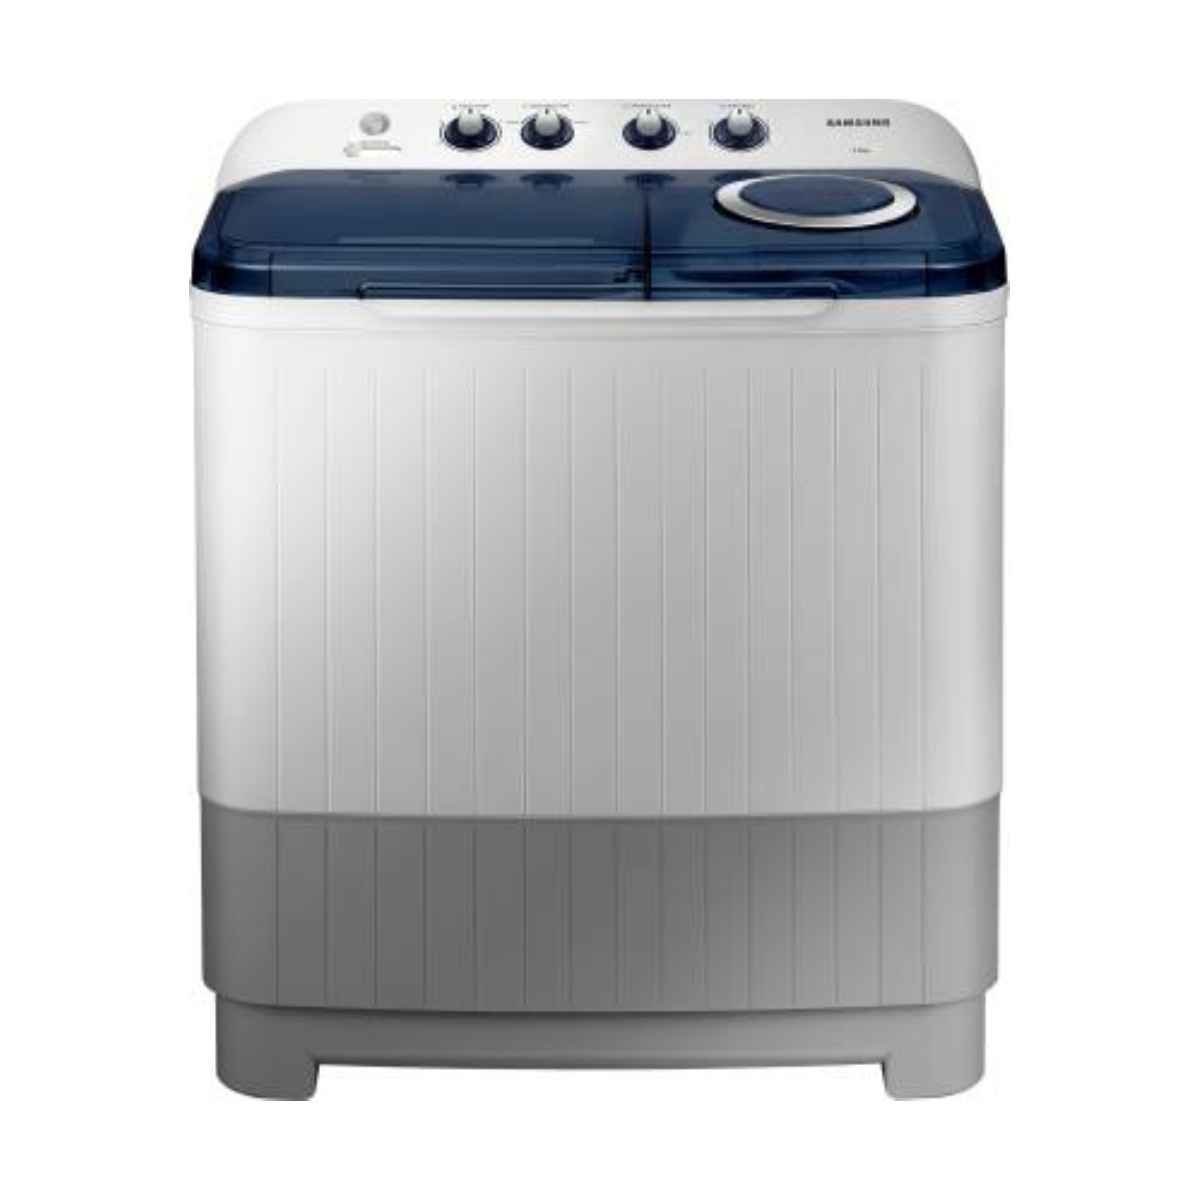 SAMSUNG 7 kg Semi Automatic Top Load Washing machine (WT70M3200HB/TL)